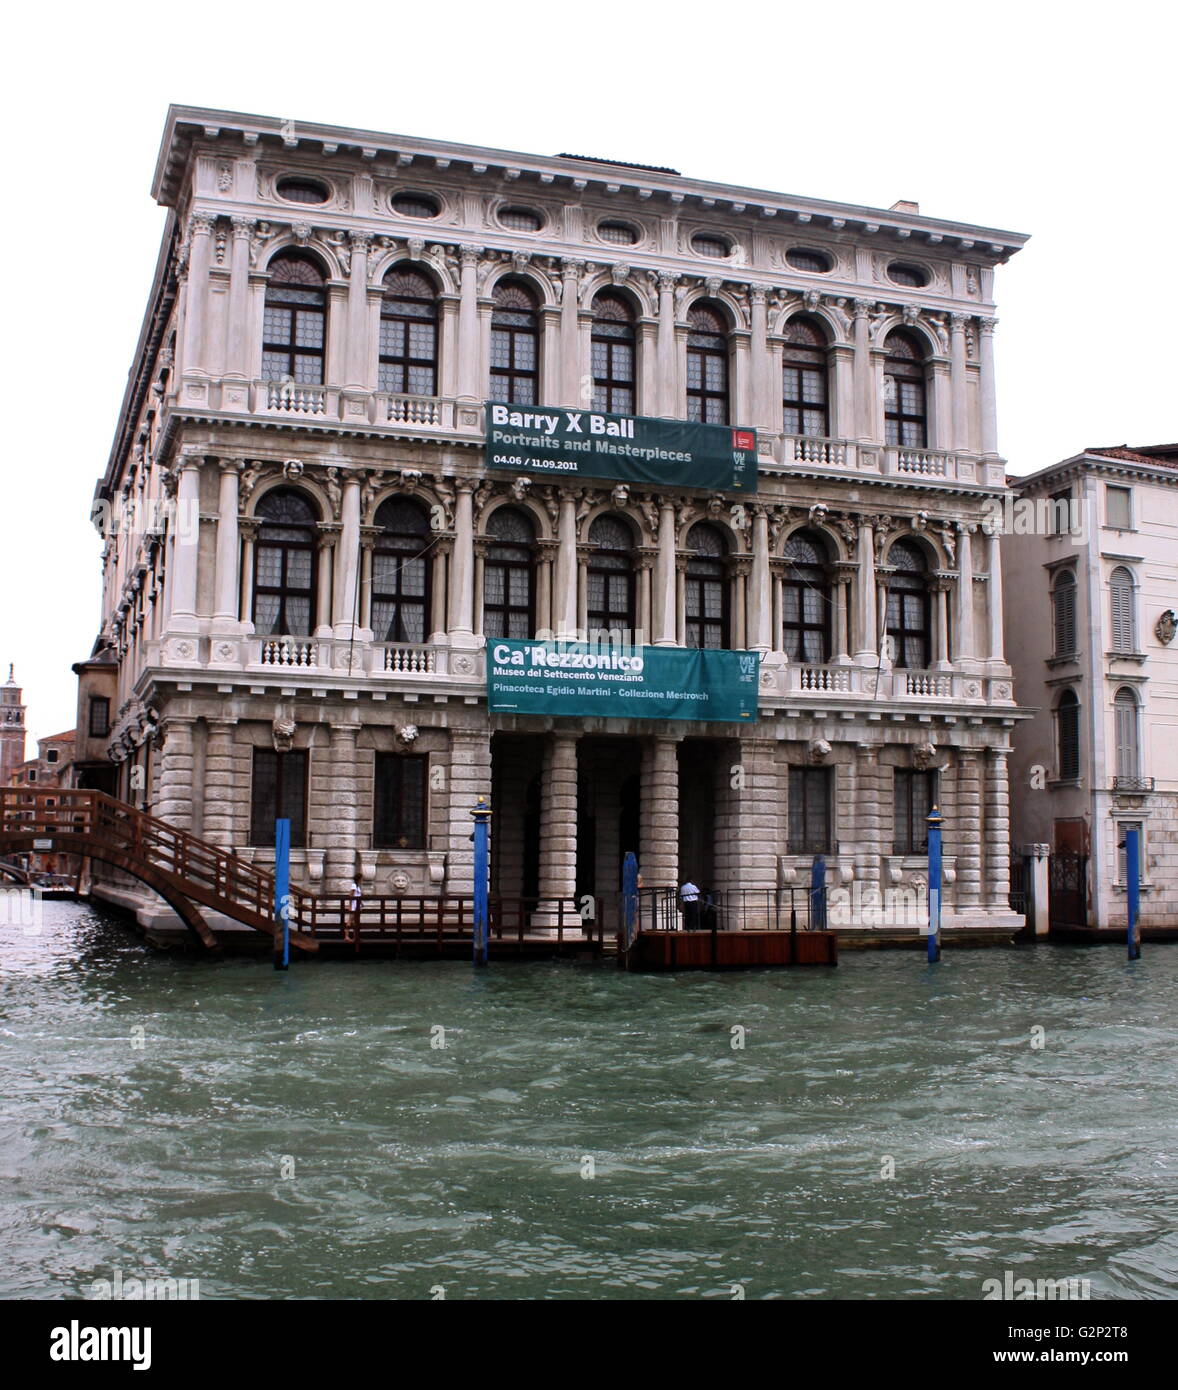 La Ca' Rezzonico. Un palais de style baroque sur le Grand Canal à Venise, Italie. Conçu par Baldassarre Longhena, à la fin du xviie siècle, mais achevé par Giorgio Massari en 1756. Maintenant c'est l'un des 11 musées gérés par la Fondazione Musei Civici di Venezia. Banque D'Images